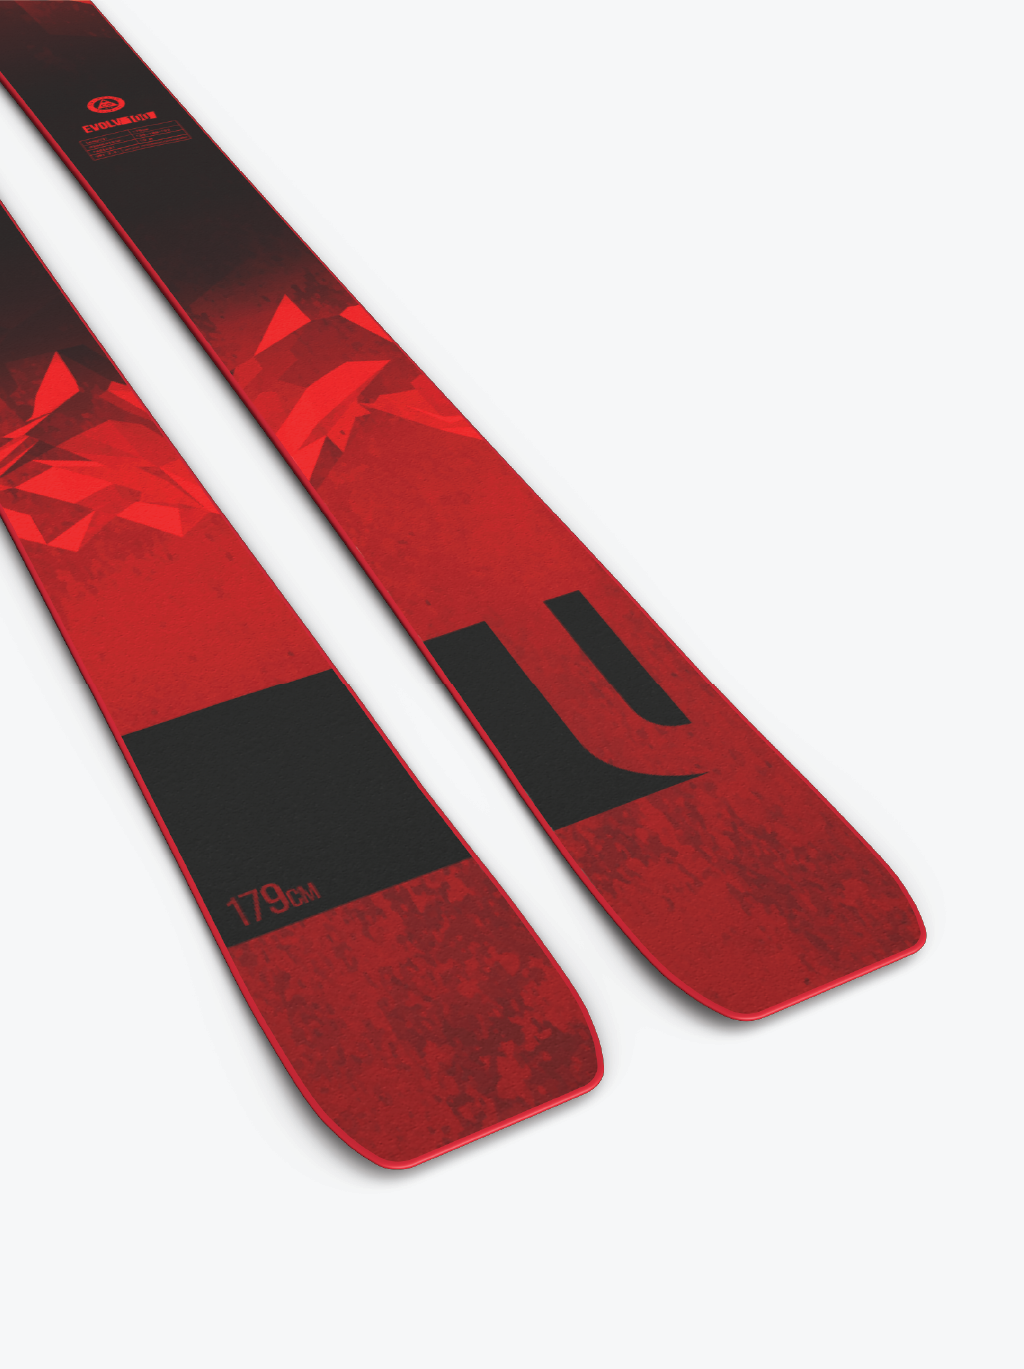 Liberty Skis 2023 Skis Liberty Skis Evolv 100 (Demo) - 2023